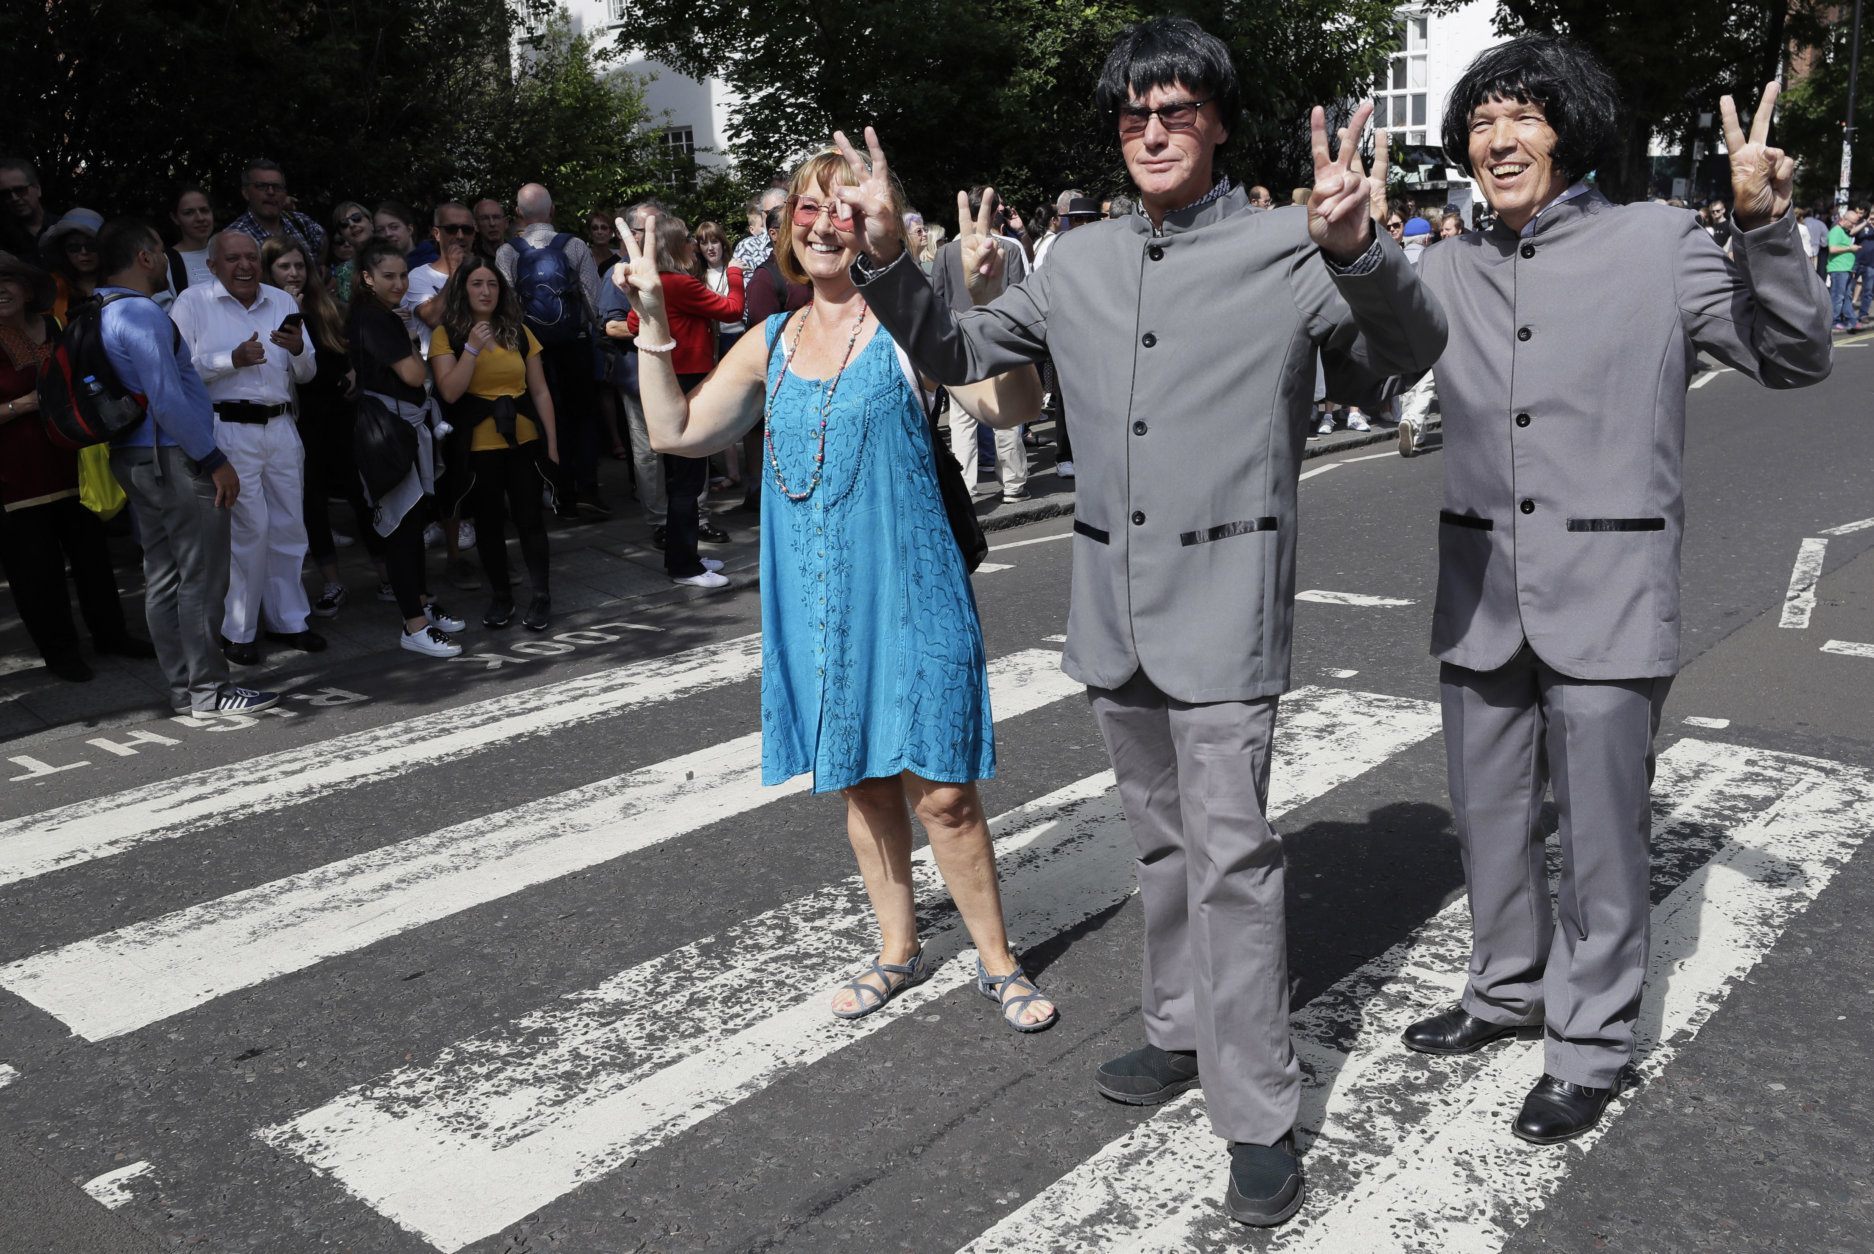 L'Abbey Road des Beatles, un succès inquiétant à Londres